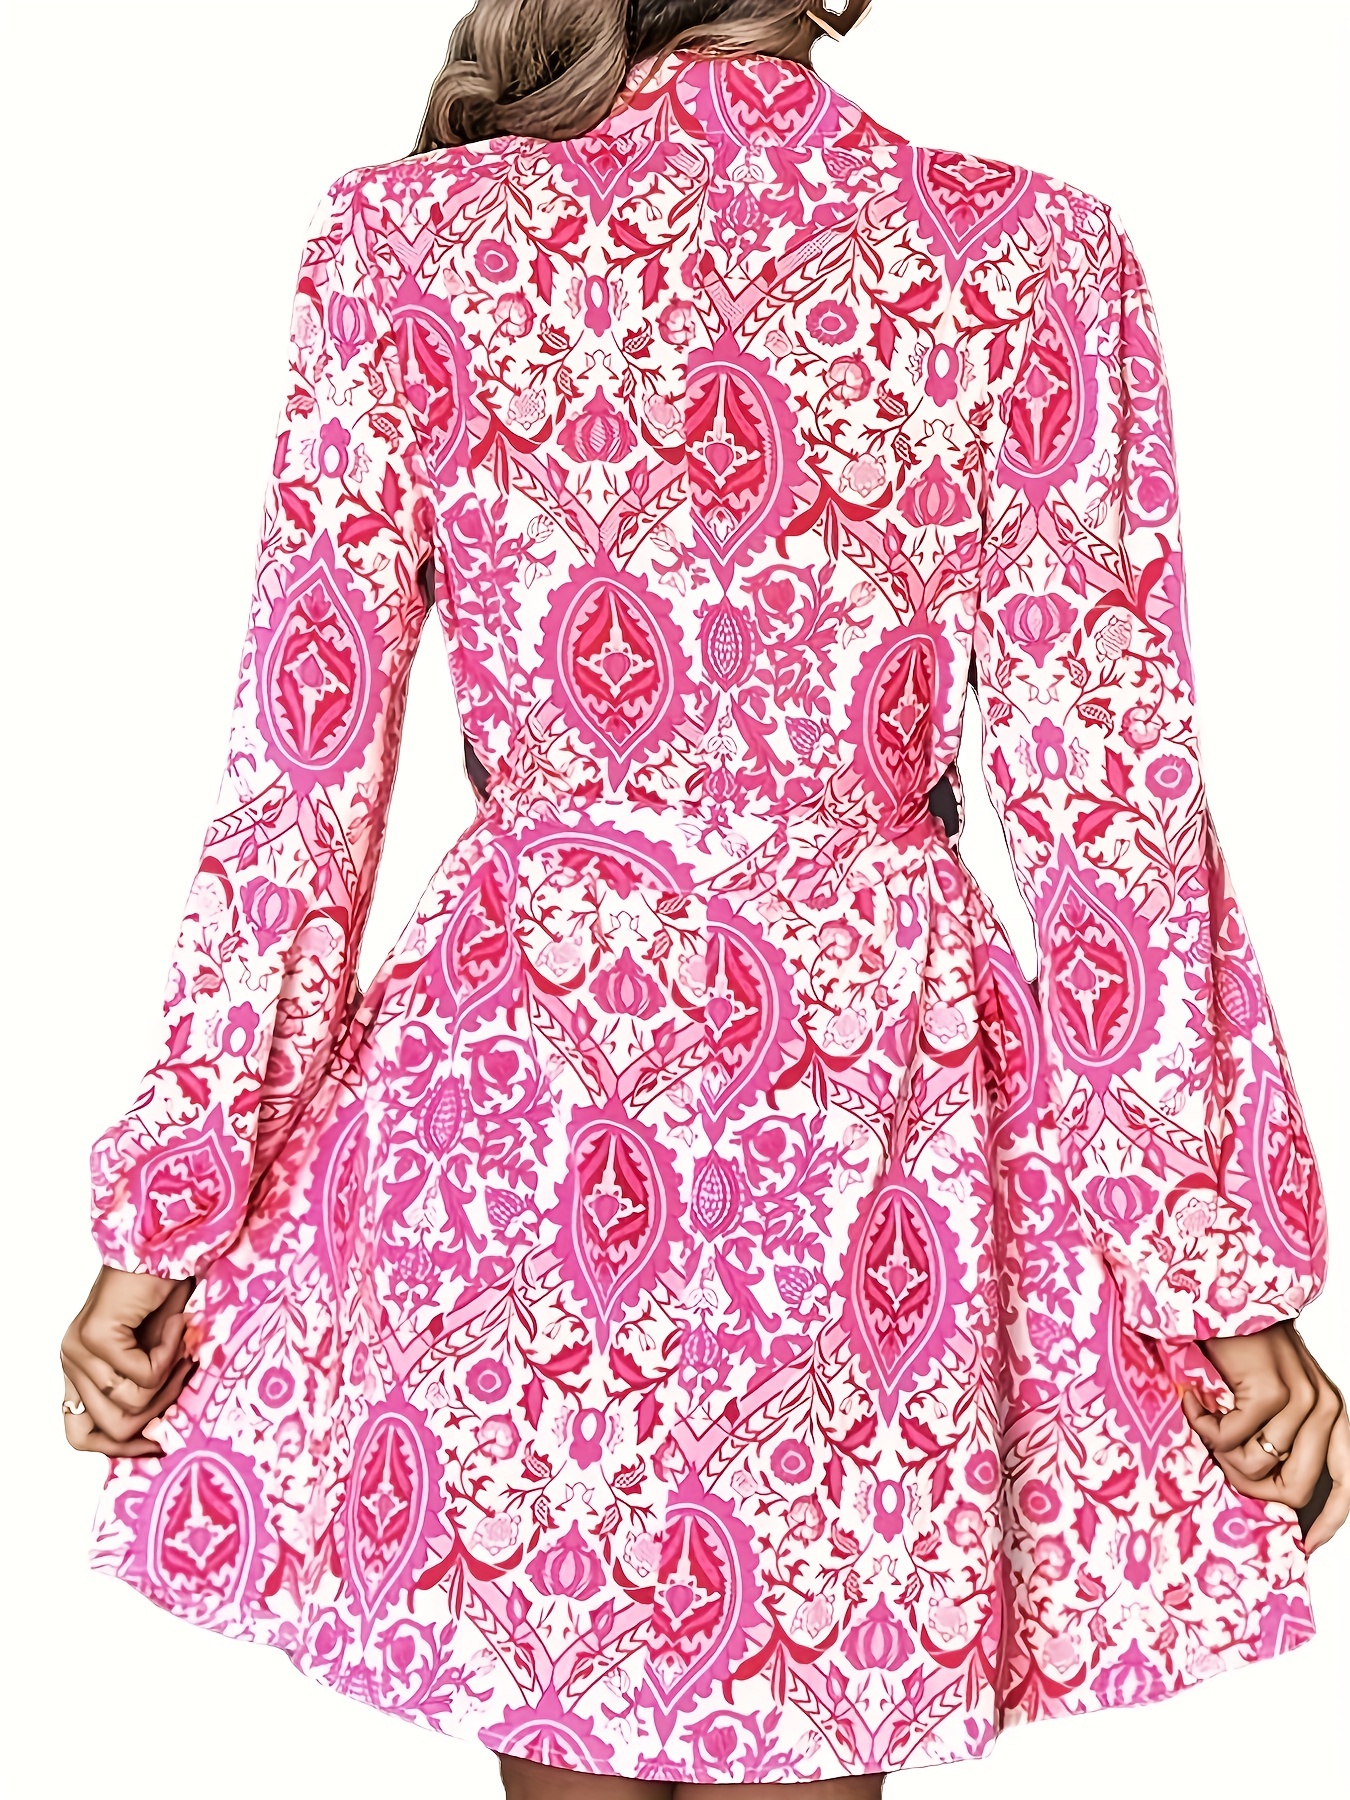 Платье с этническим цветочным принтом, повседневное платье с длинными рукавами на пуговицах спереди, женская одежда